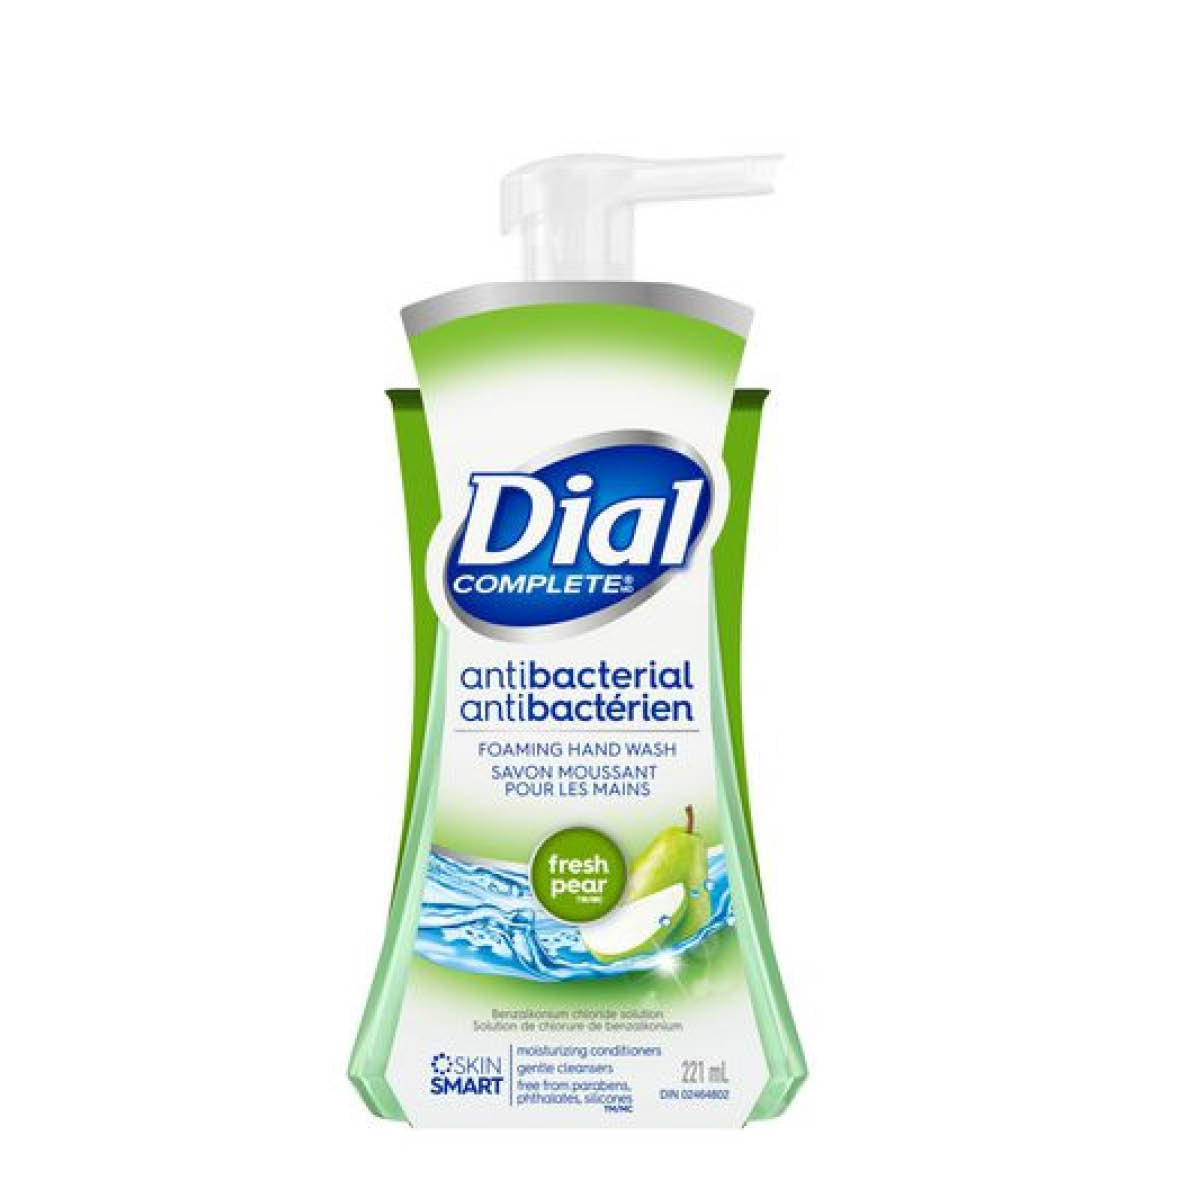 Dial Antibacterial Foaming Hand Wash, Fresh Pear, 221ml